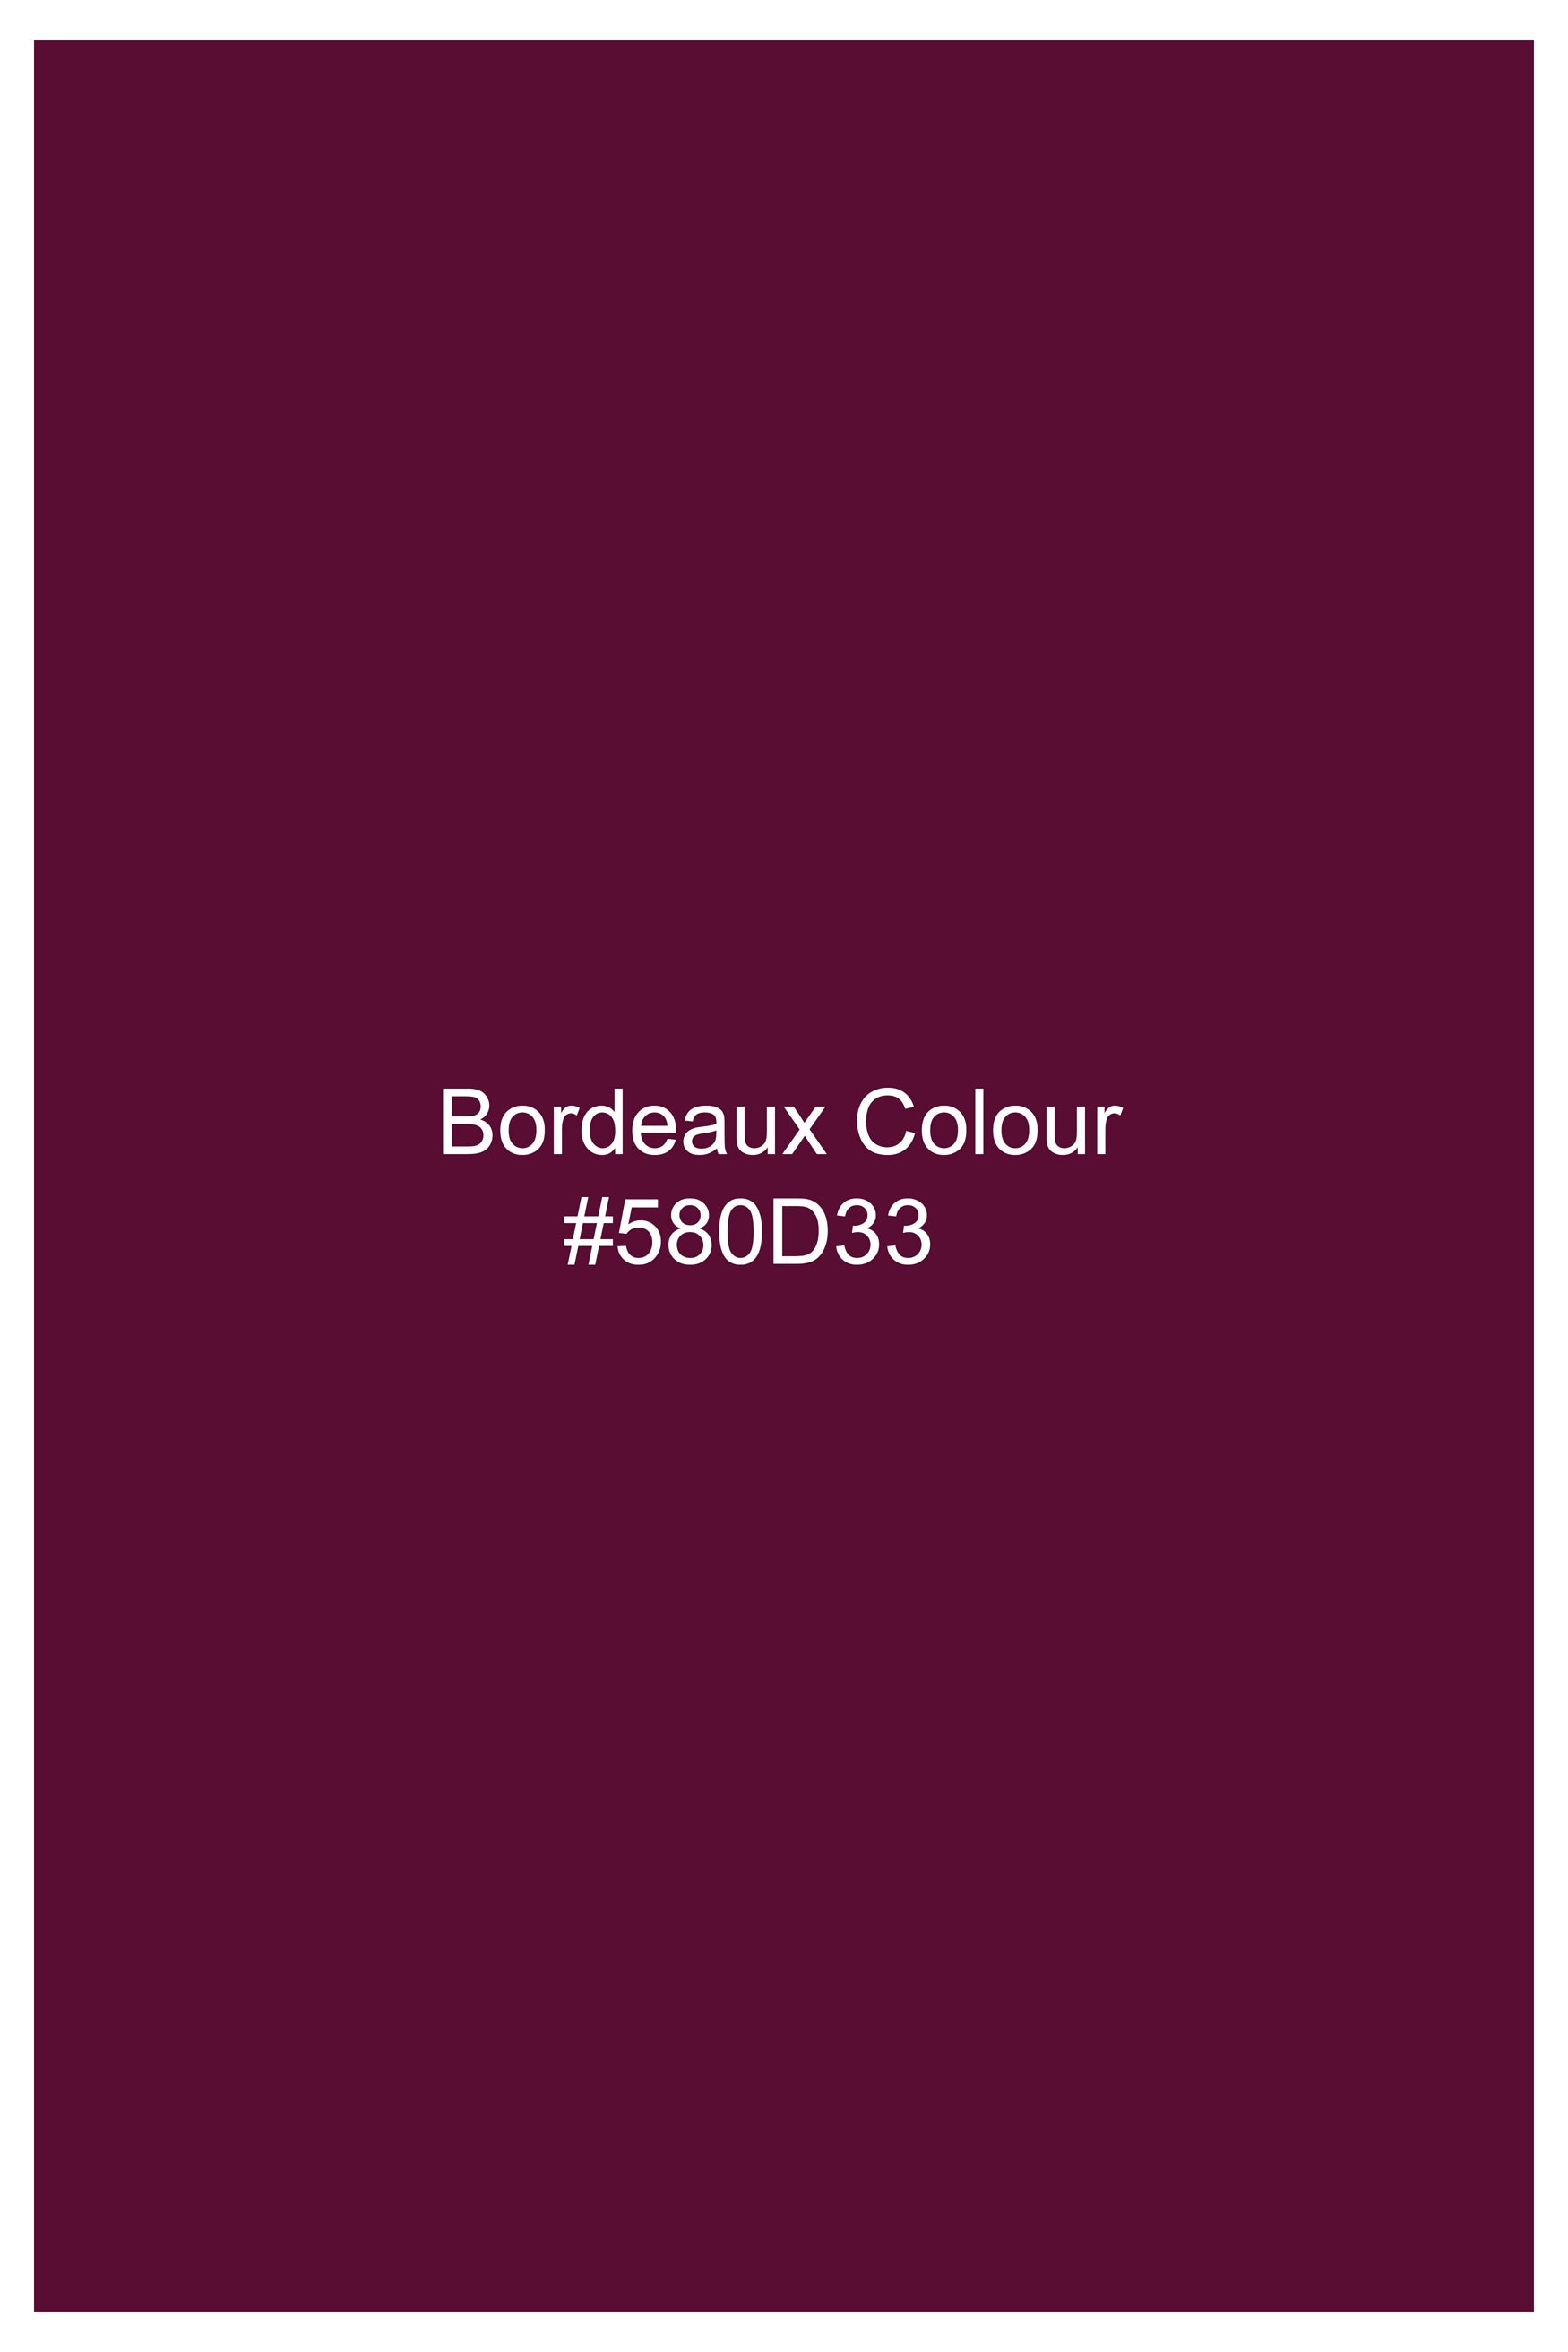 Bordeaux Wine Viscose Embroidered With Tikki Work Designer Nehru Jacket